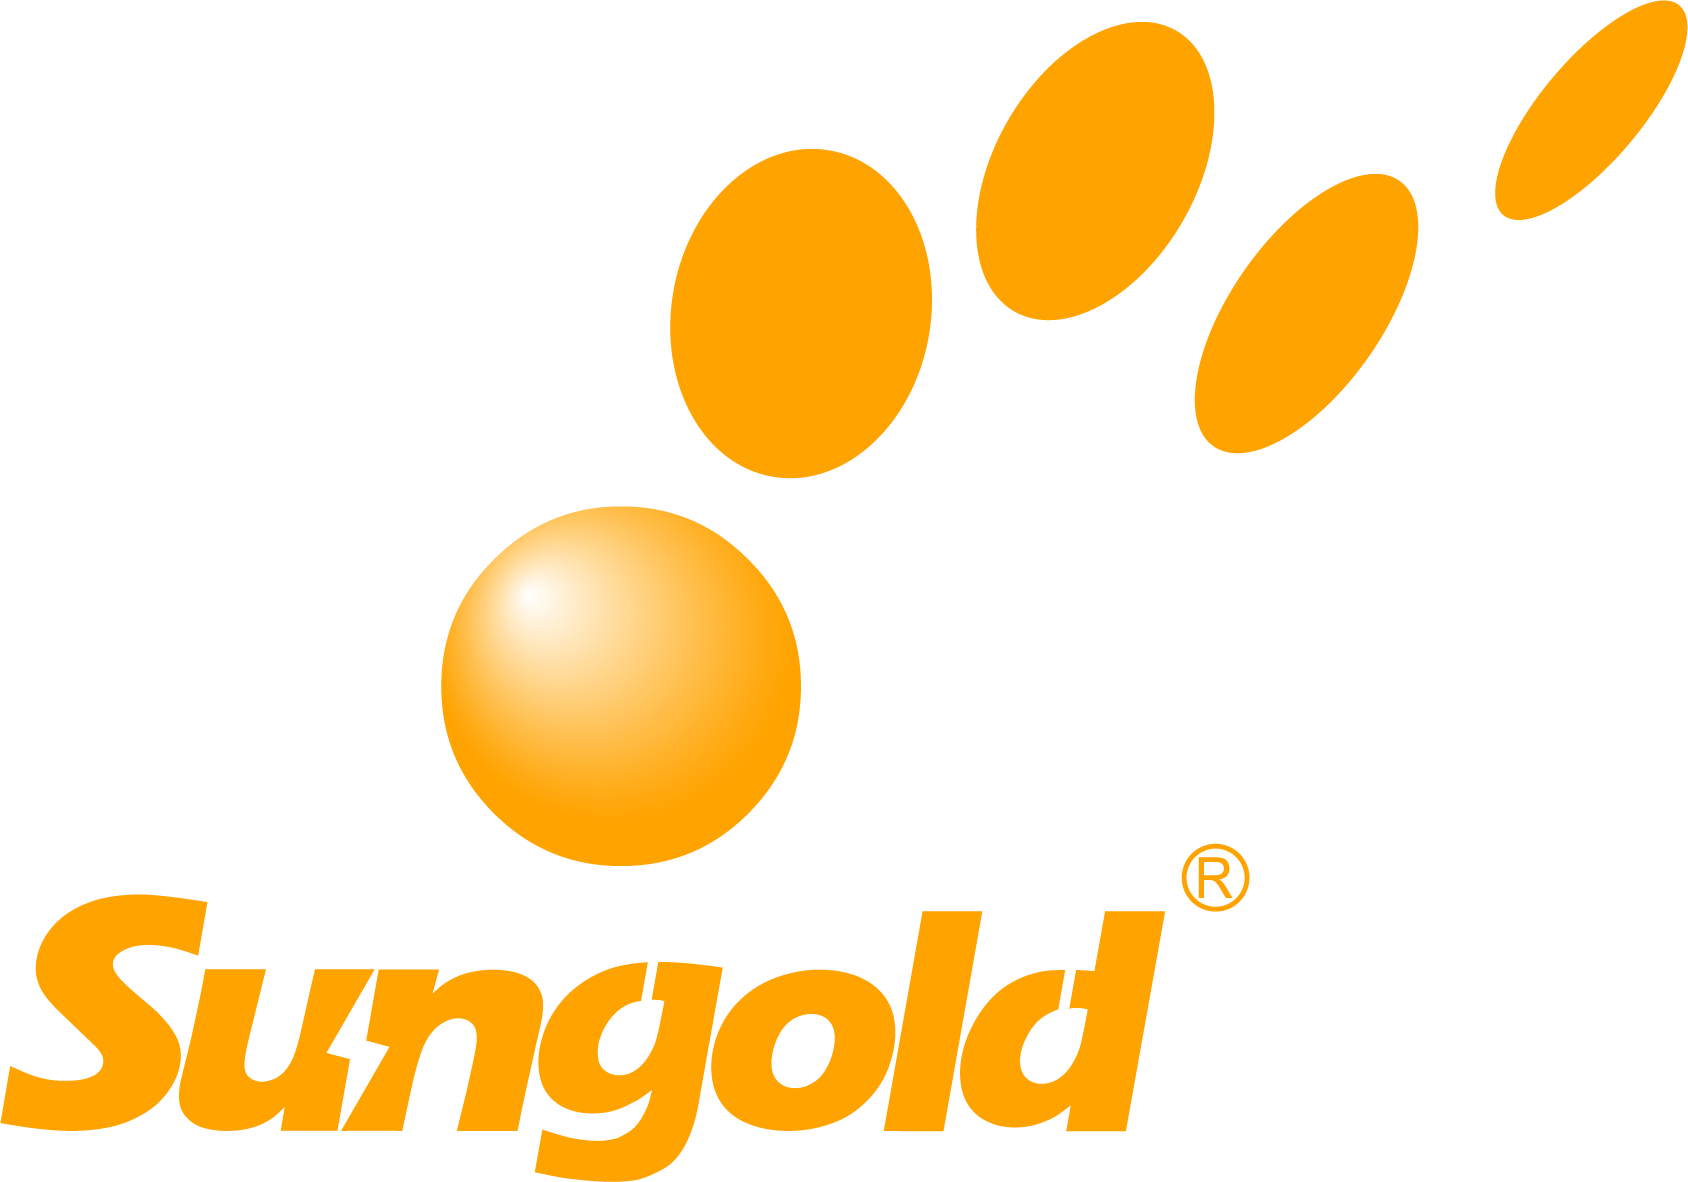 sungold logo